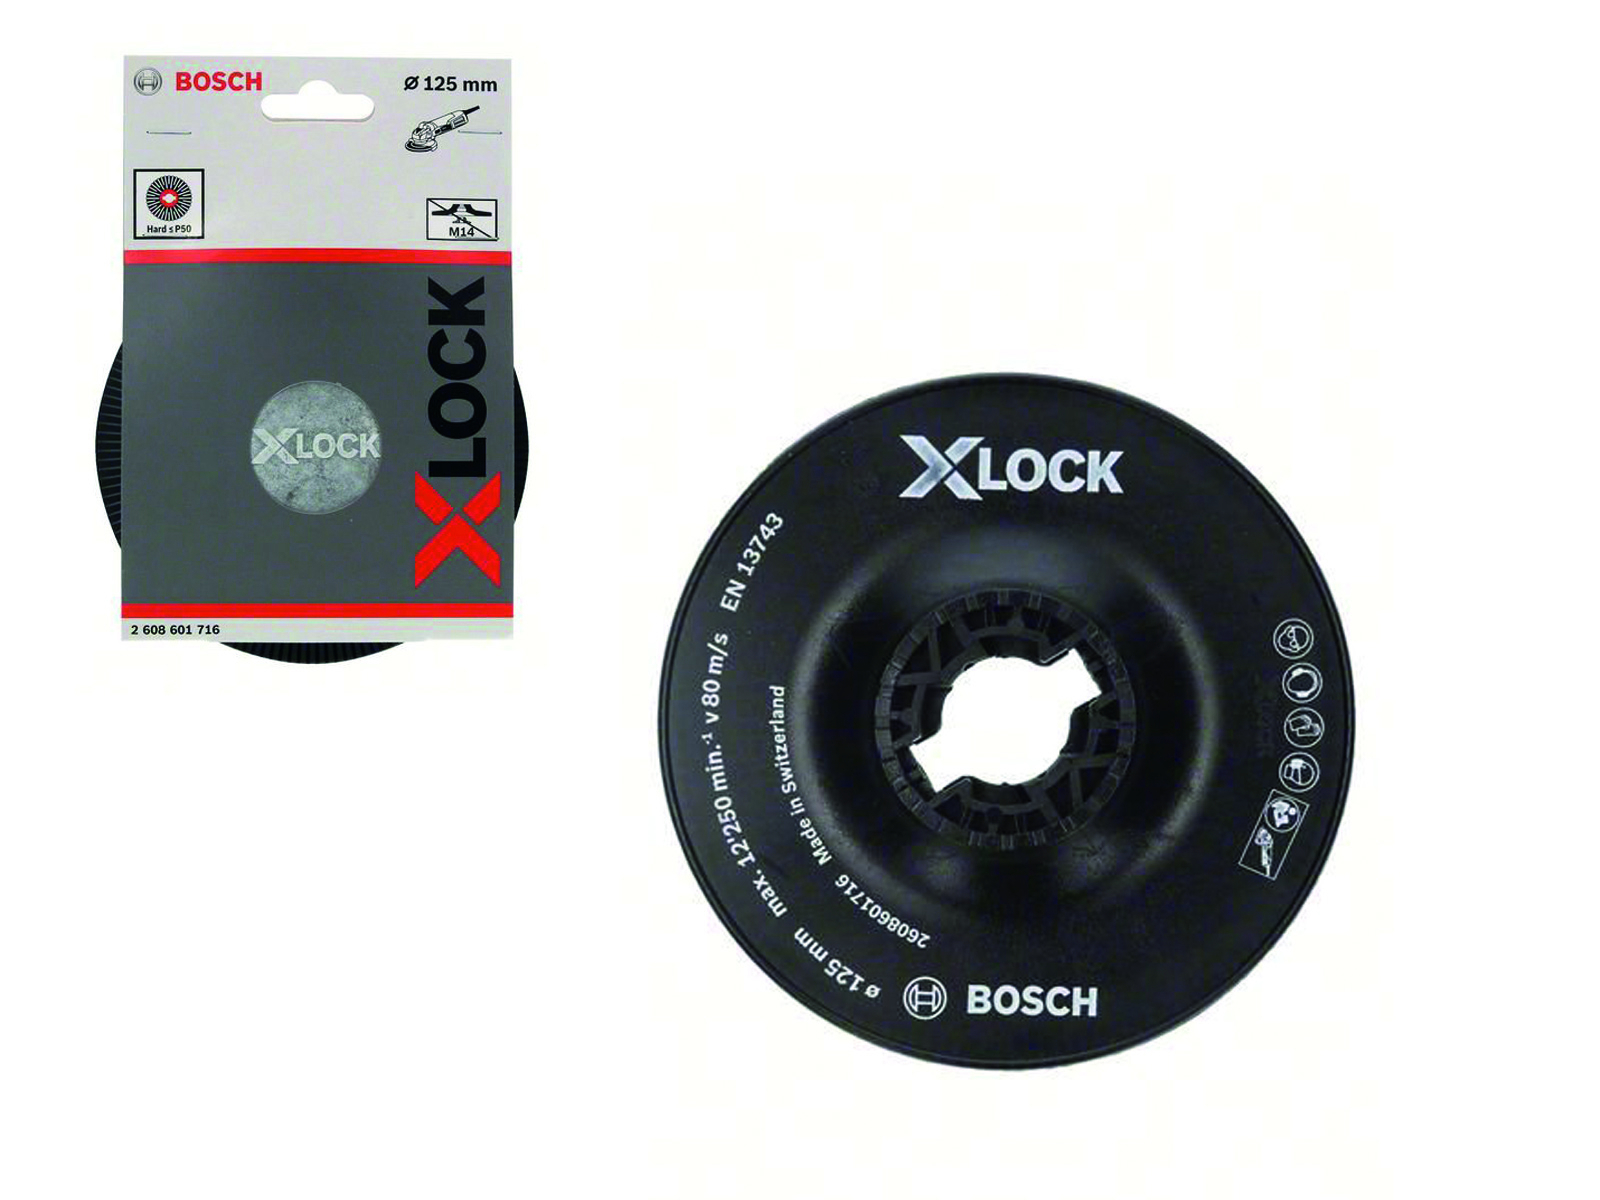 Тарелка опорная средняя X-LOCK с зажимом (125 мм) / Bosch